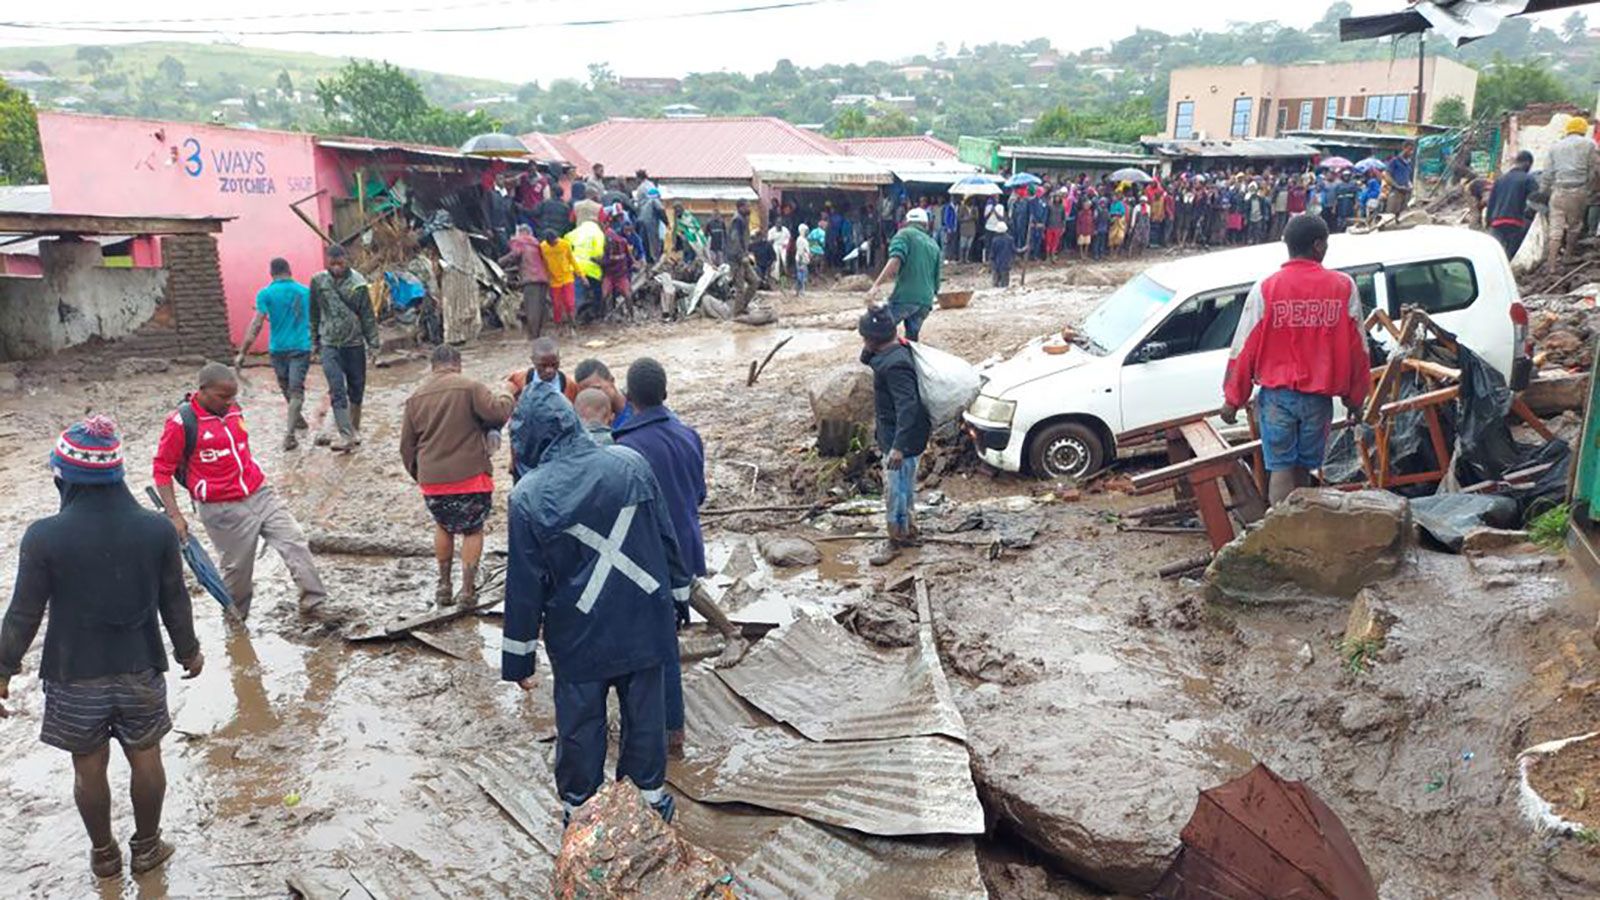 Malawi: Cyclone Freddy kills at least 99 in Malawi | CNN